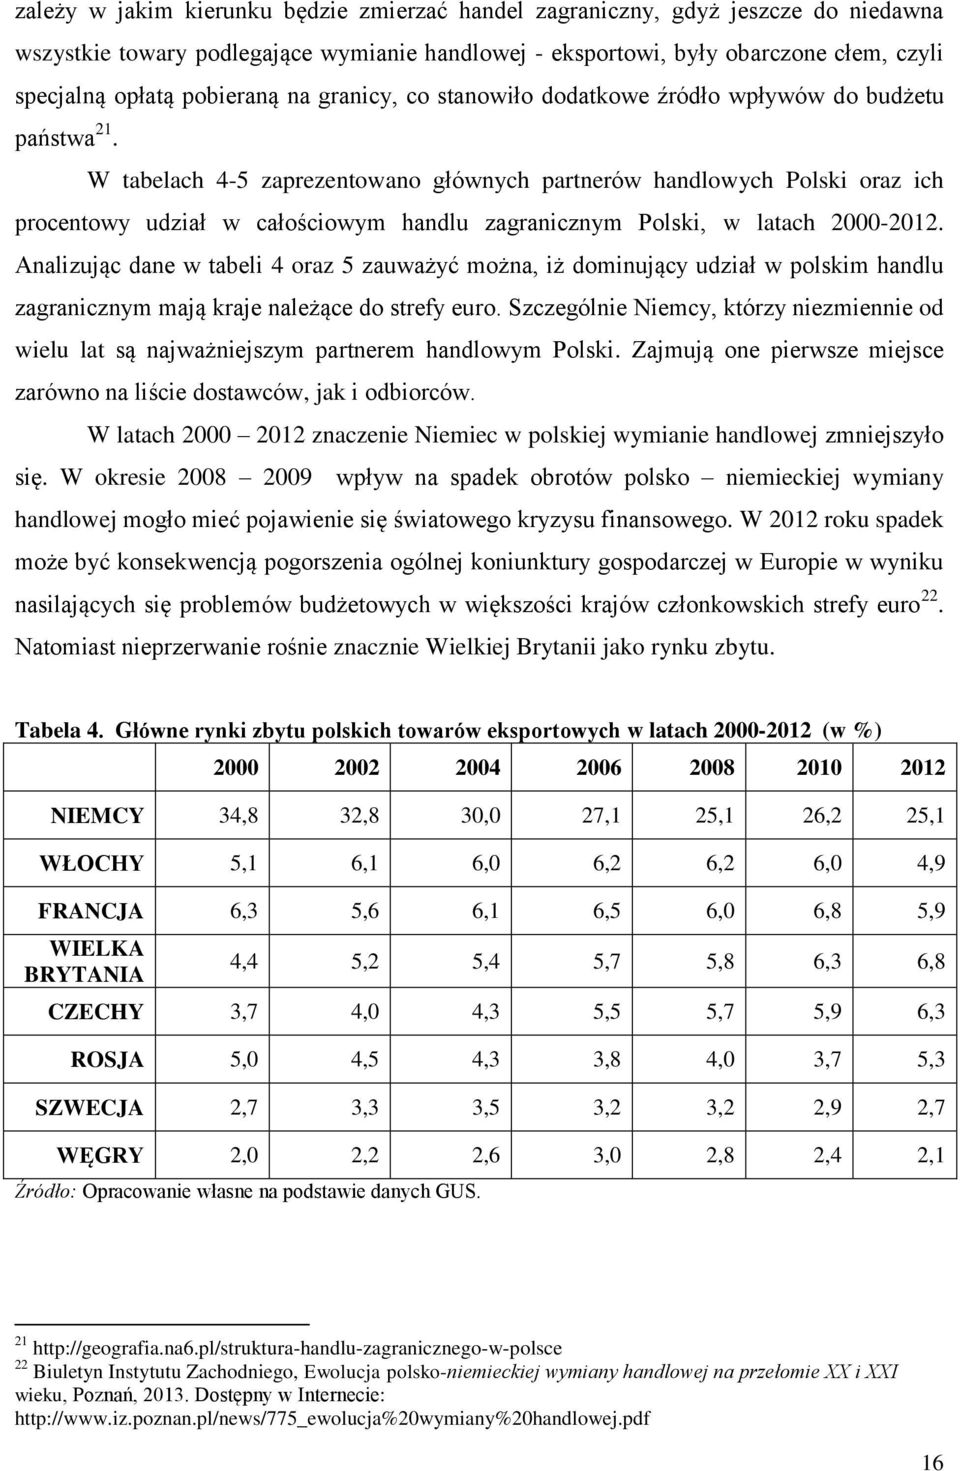 W tabelach 4-5 zaprezentowano głównych partnerów handlowych Polski oraz ich procentowy udział w całościowym handlu zagranicznym Polski, w latach 2000-2012.